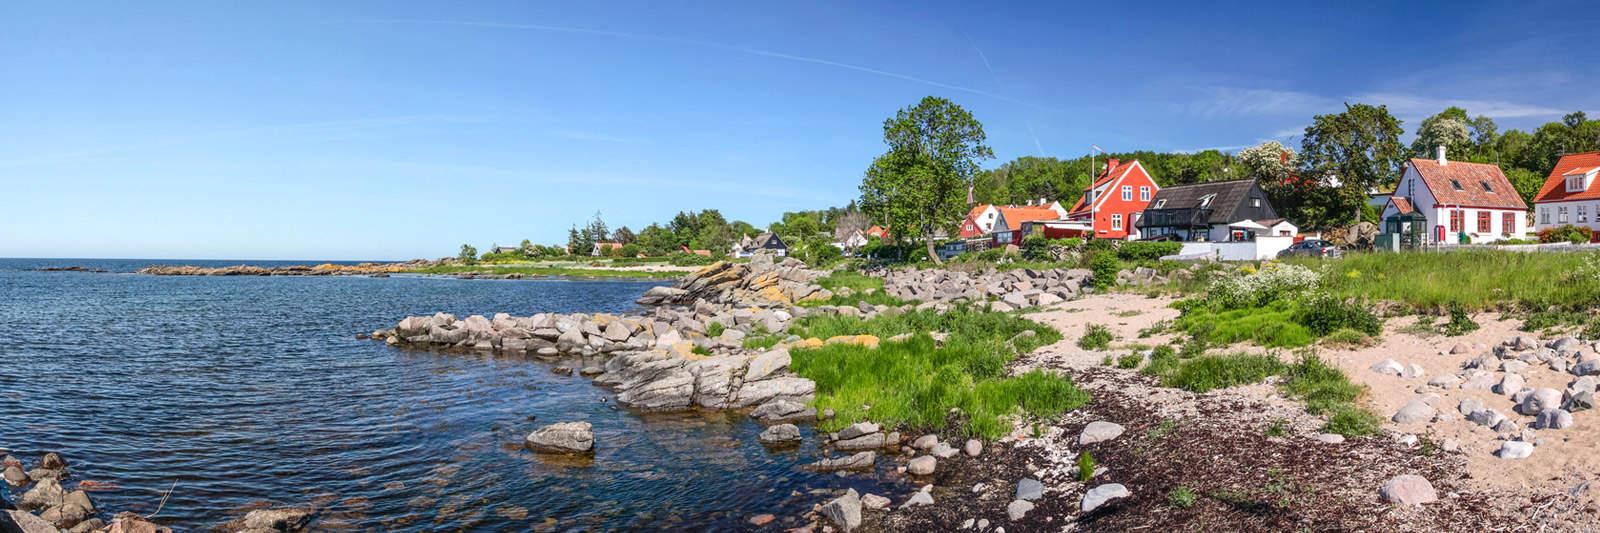 43 Ferienwohnungen und Ferienhäuser in Reersø - tourist-online.de